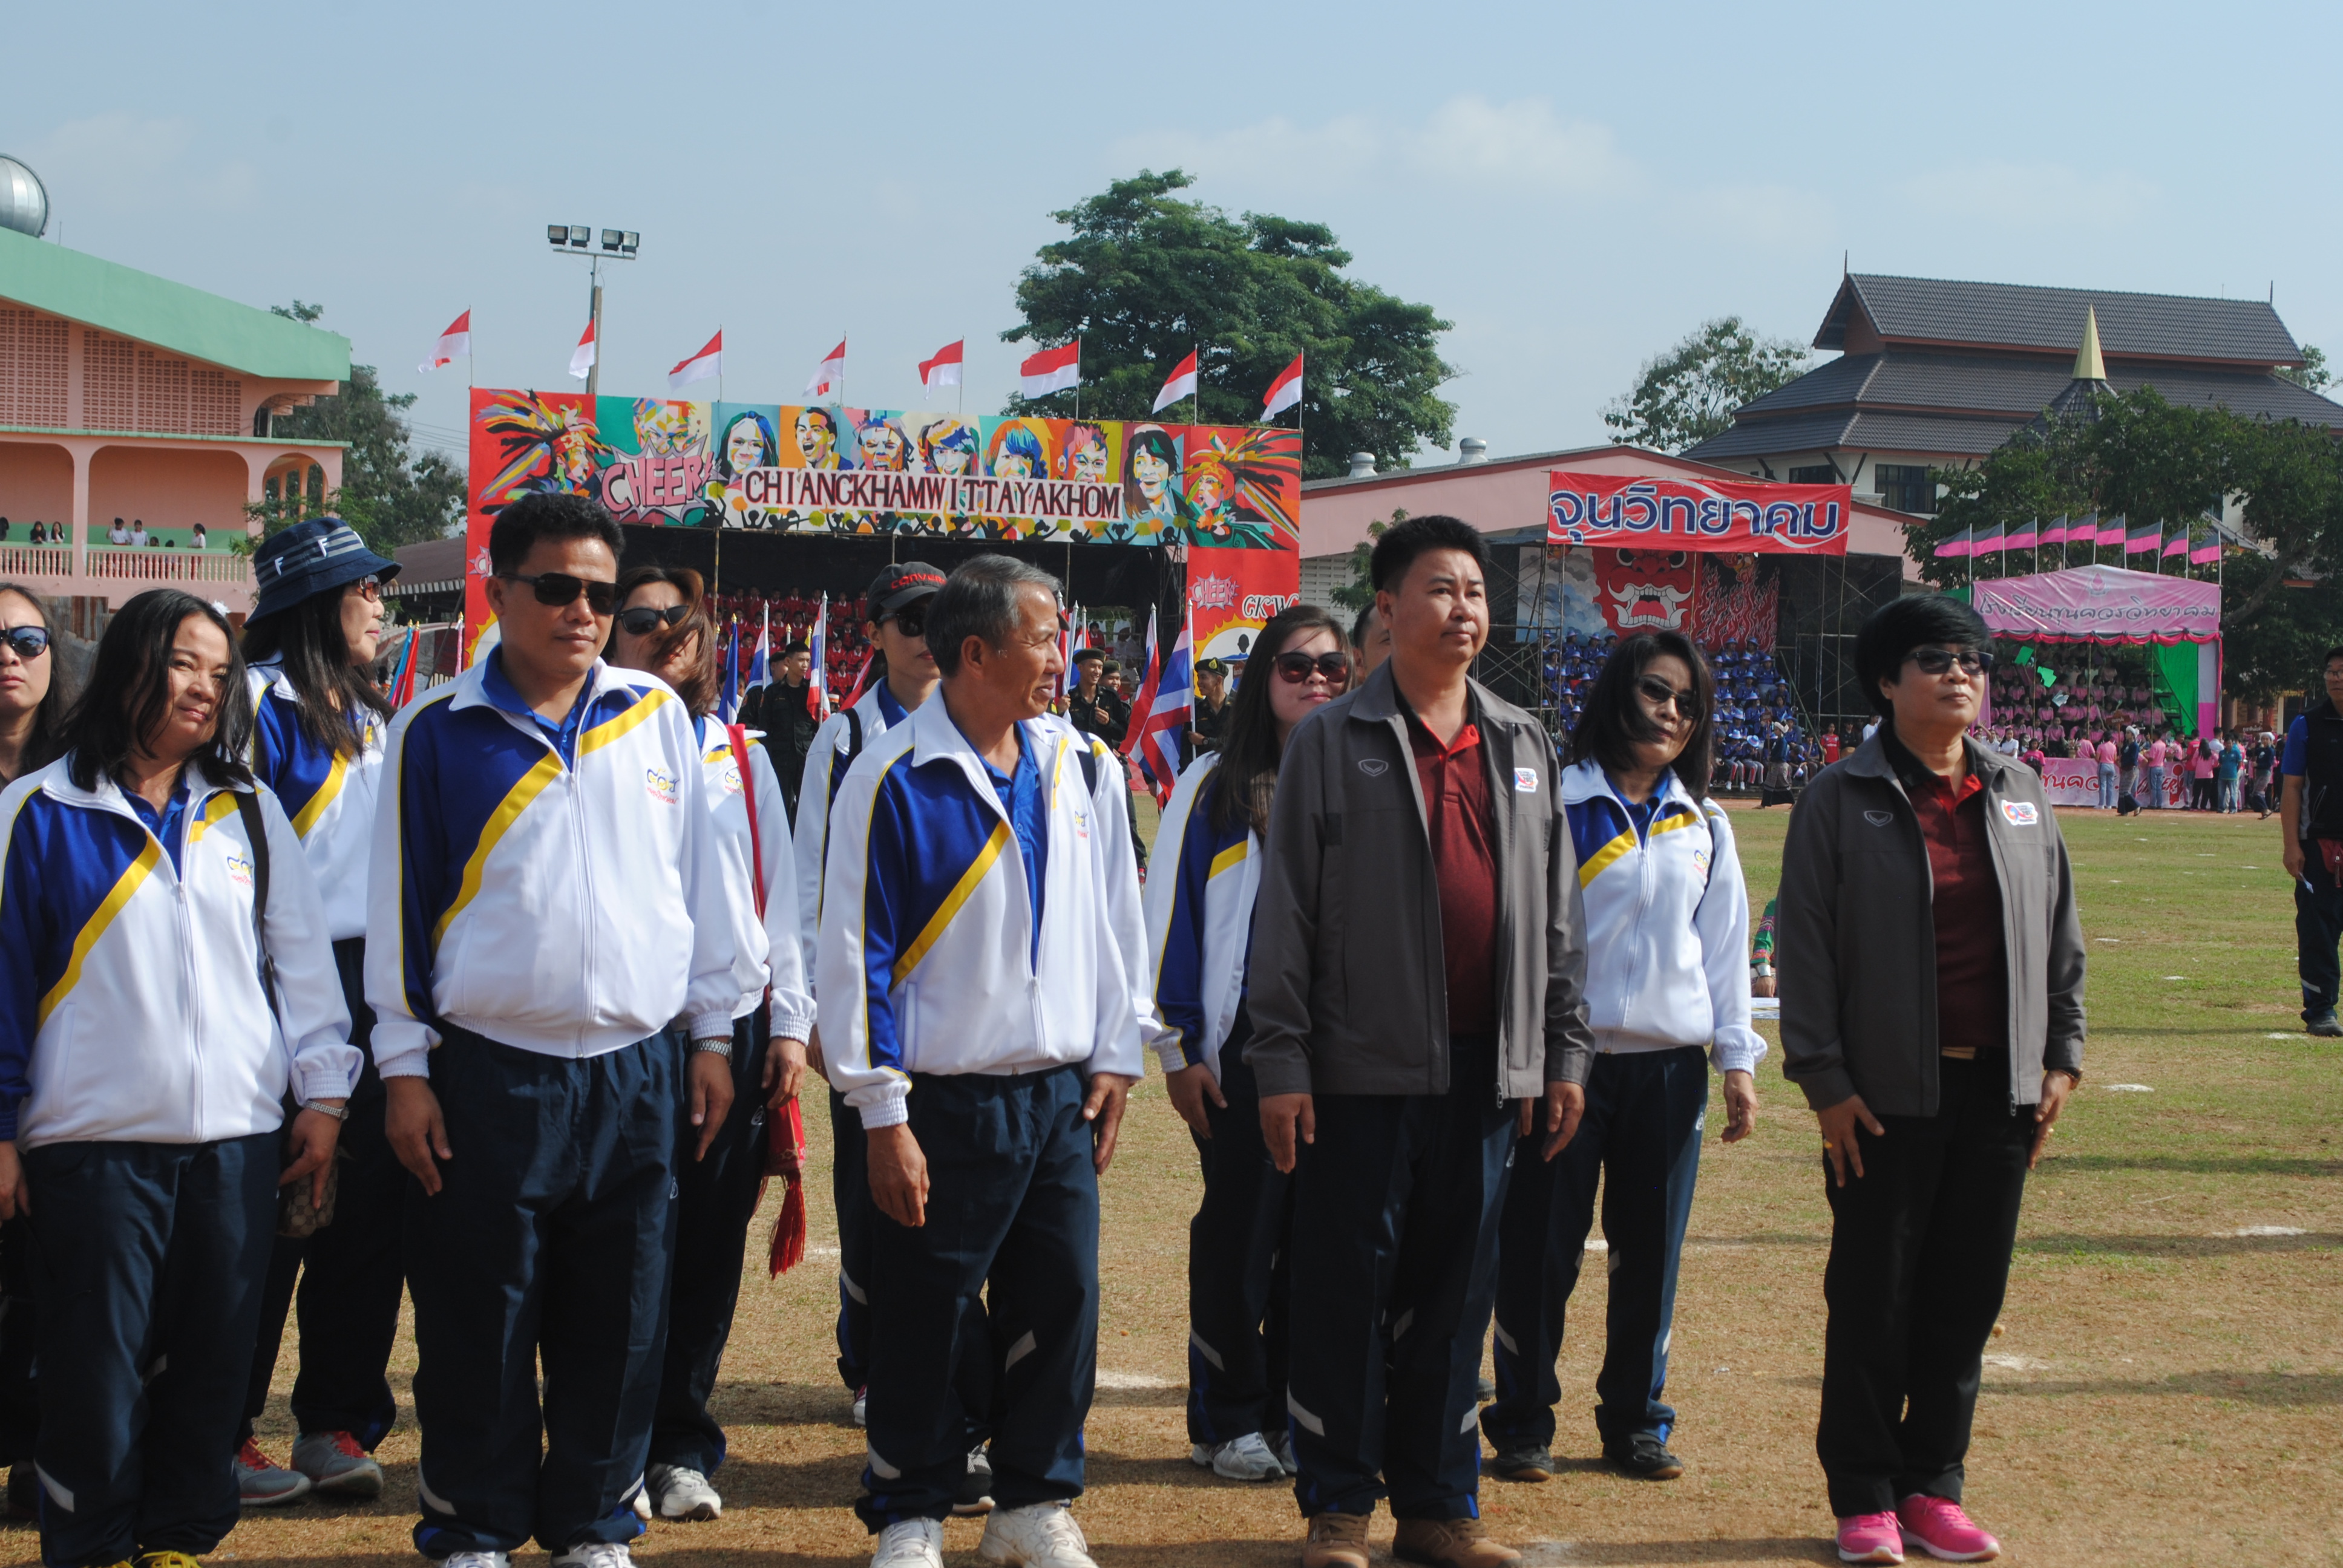 กีฬากลุ่มมัธยม "ภูอานม้าเกมส์" ปีการศึกษา 2560